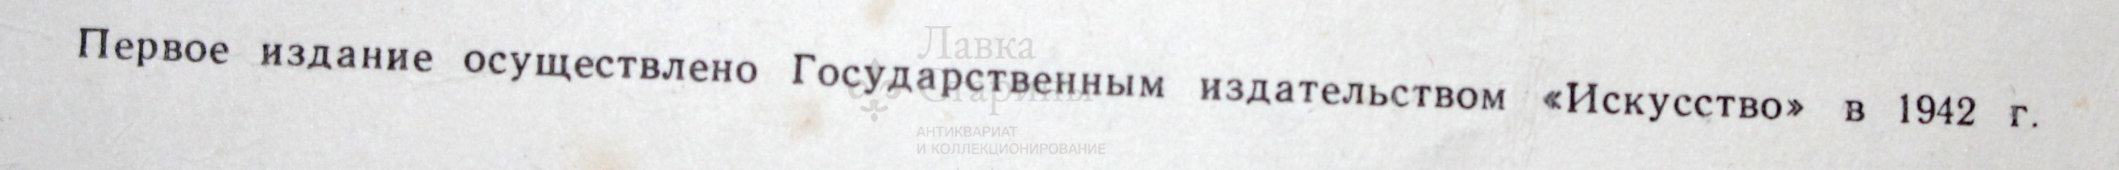 Советский агитационный плакат «Воин, ответь родине победой!», 1970-е г.